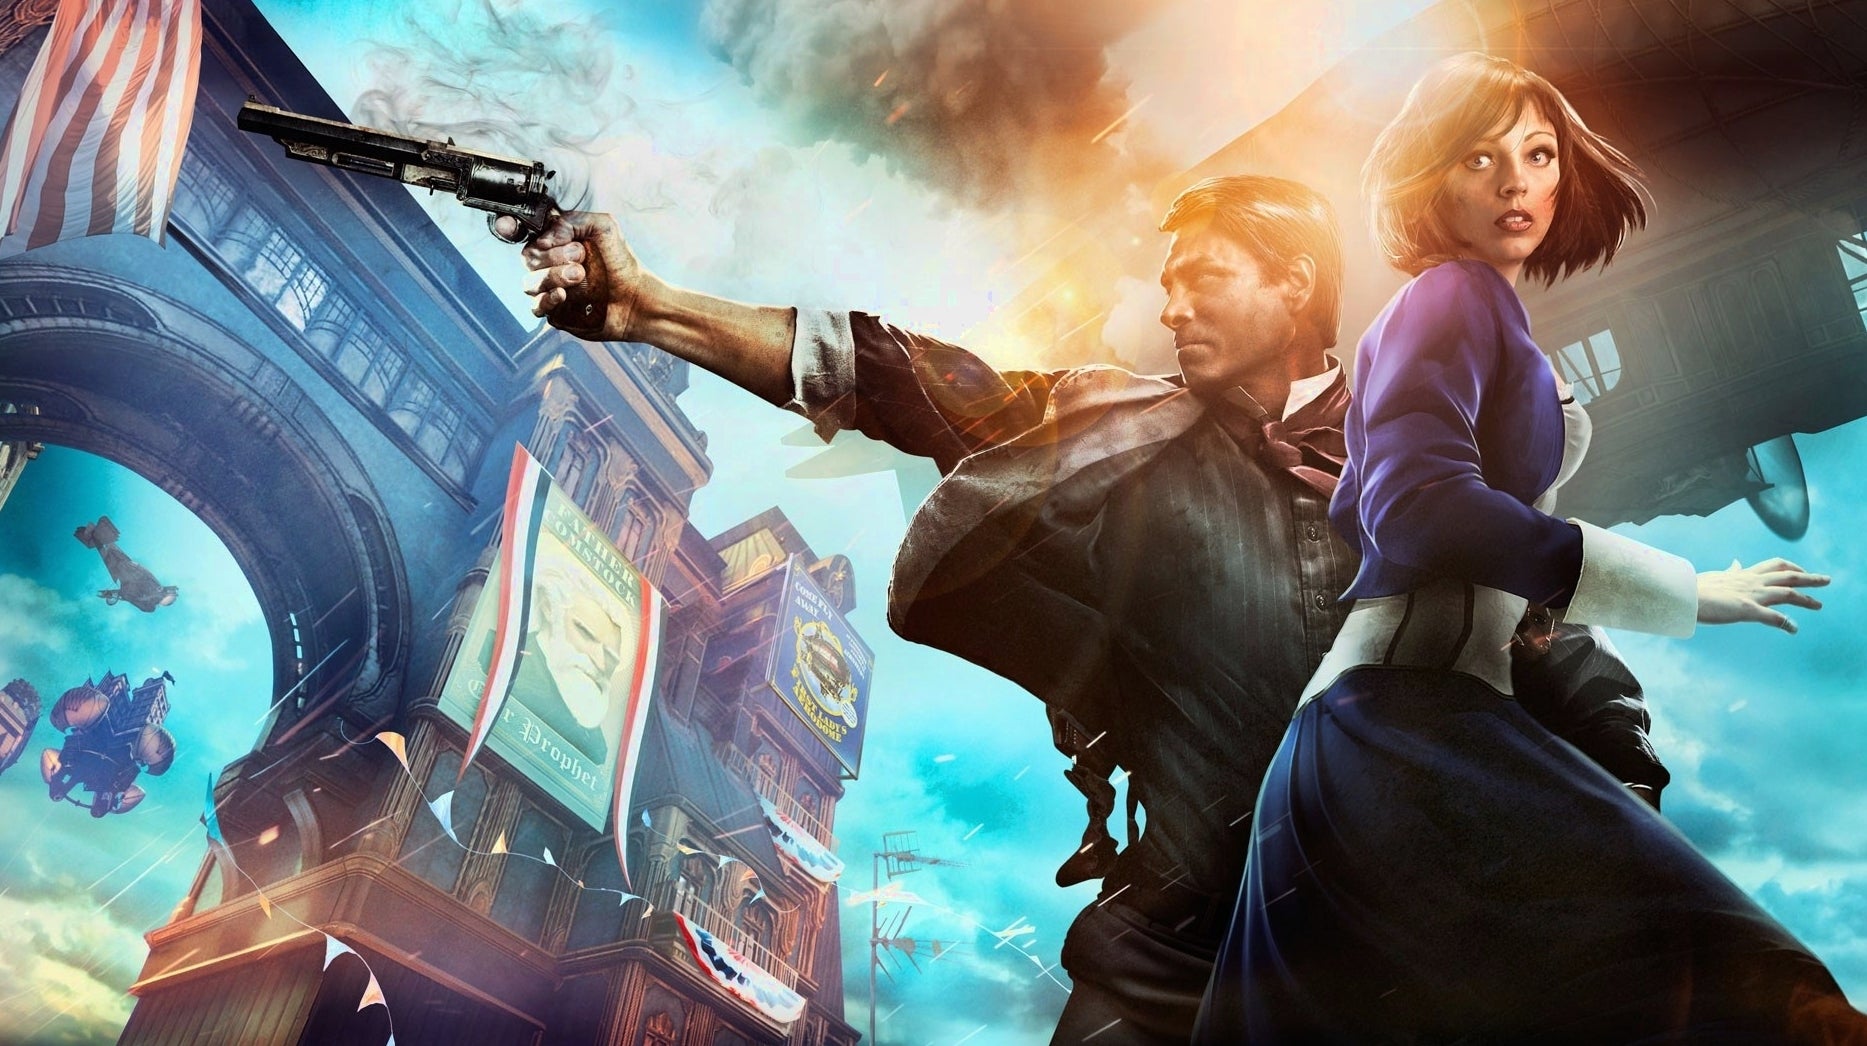 Bilder zu BioShock 4 wird anscheinend ein Open-World-Spiel